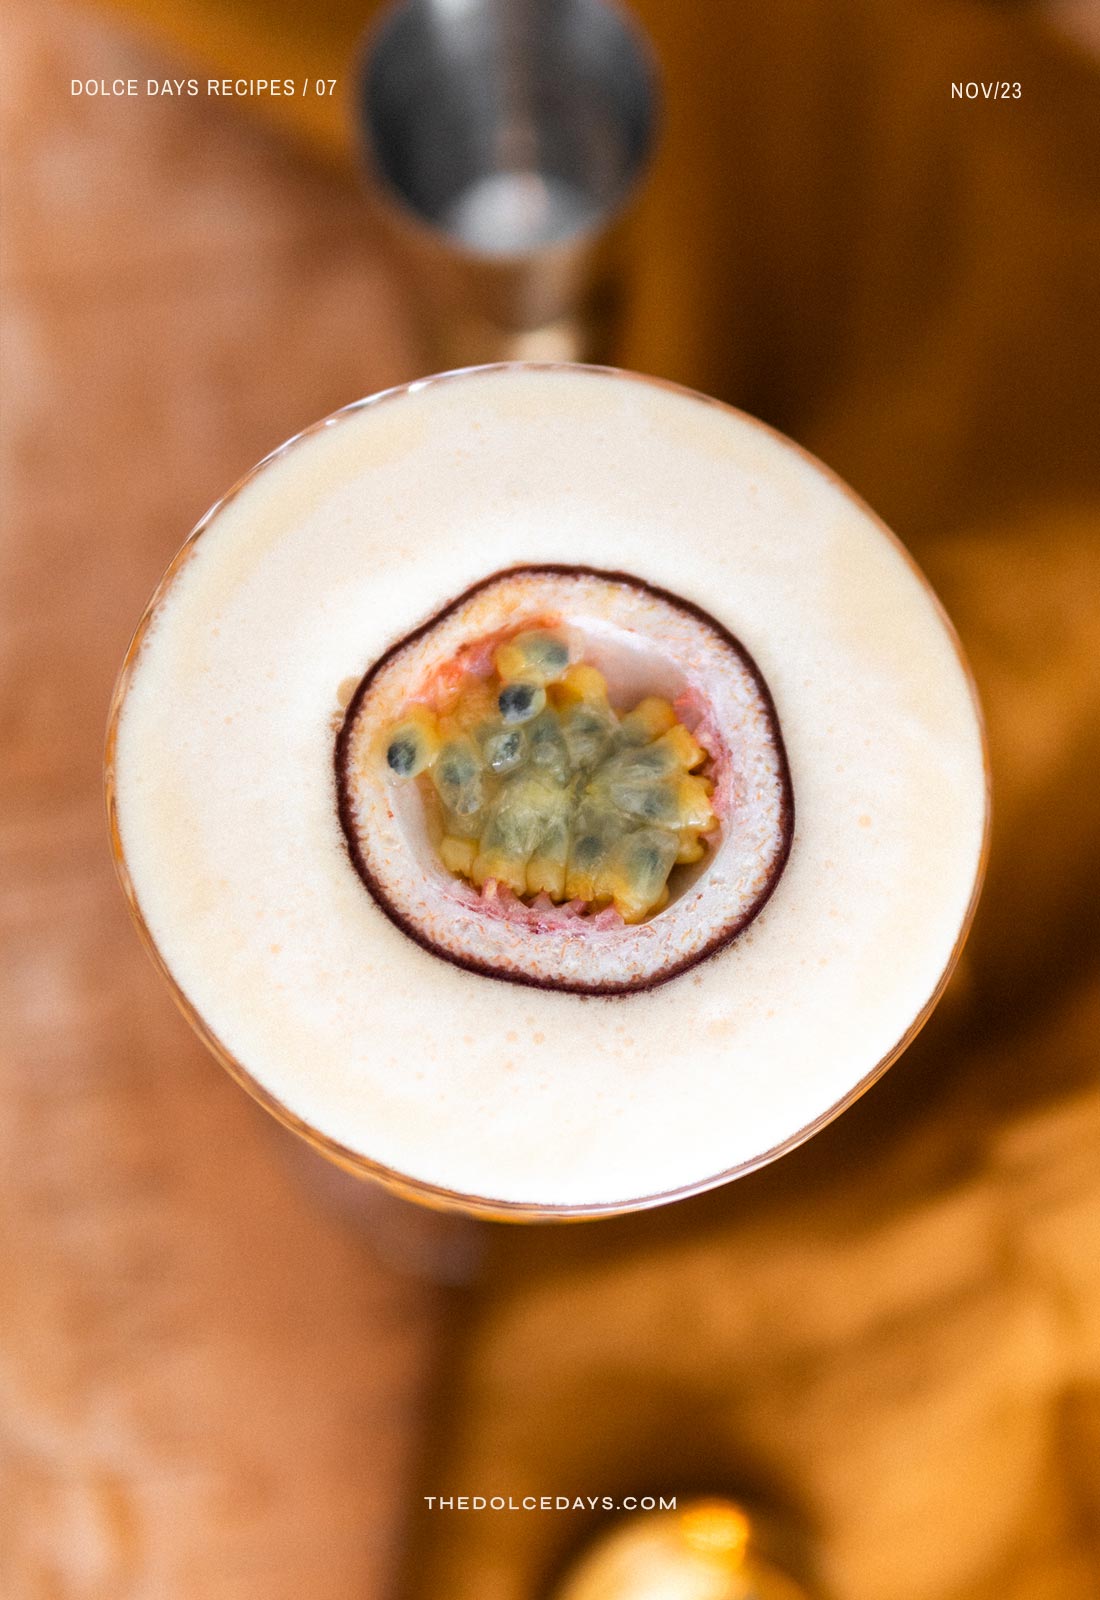 Detalhe do maracujá aberto dentro do drink para decoração.